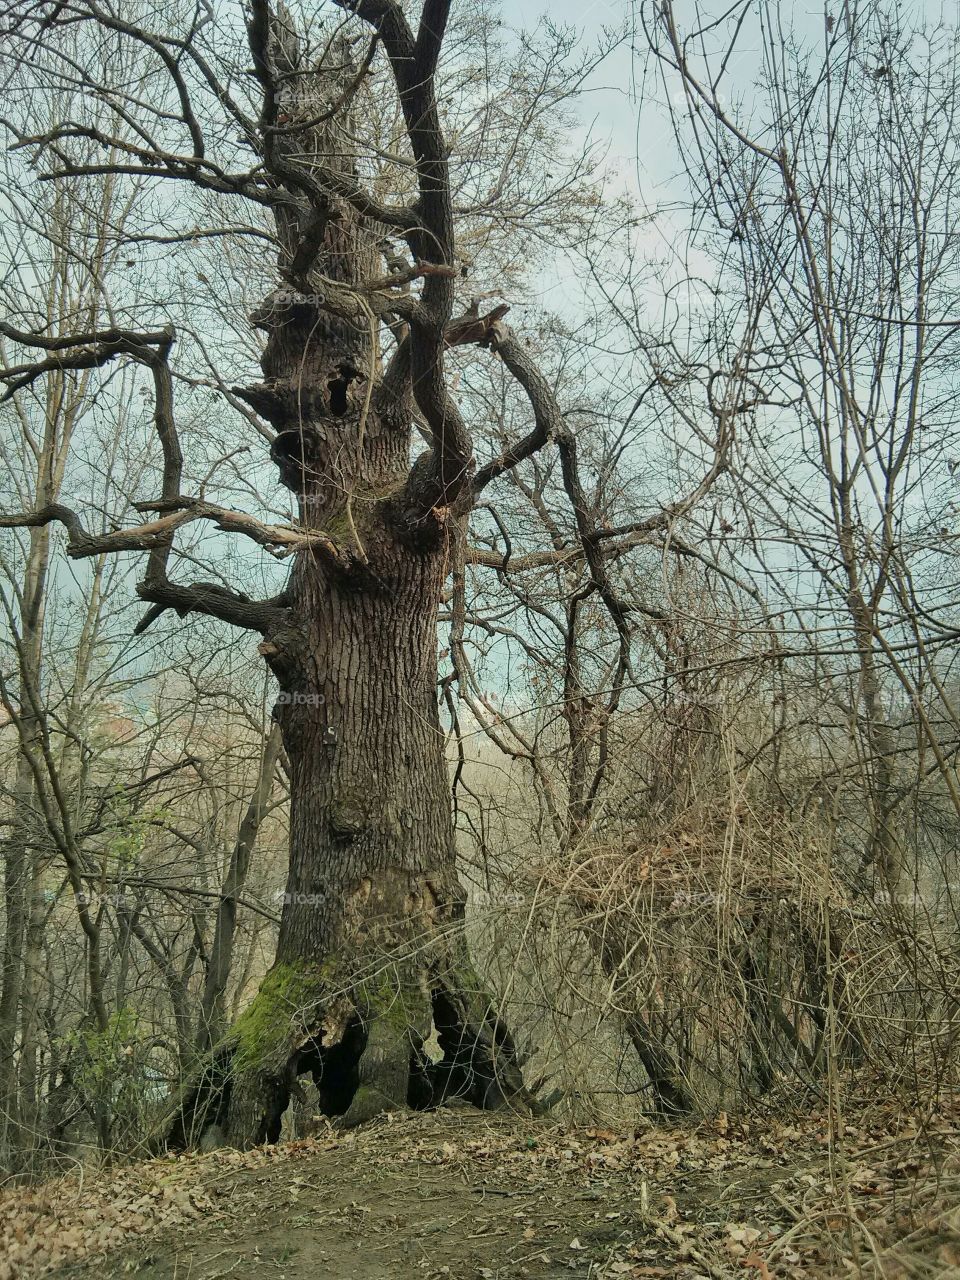 talking tree, the Witch, Onodrim, Ent. Mountain Vitosha, Sofia, Bulgaria. nexus 4